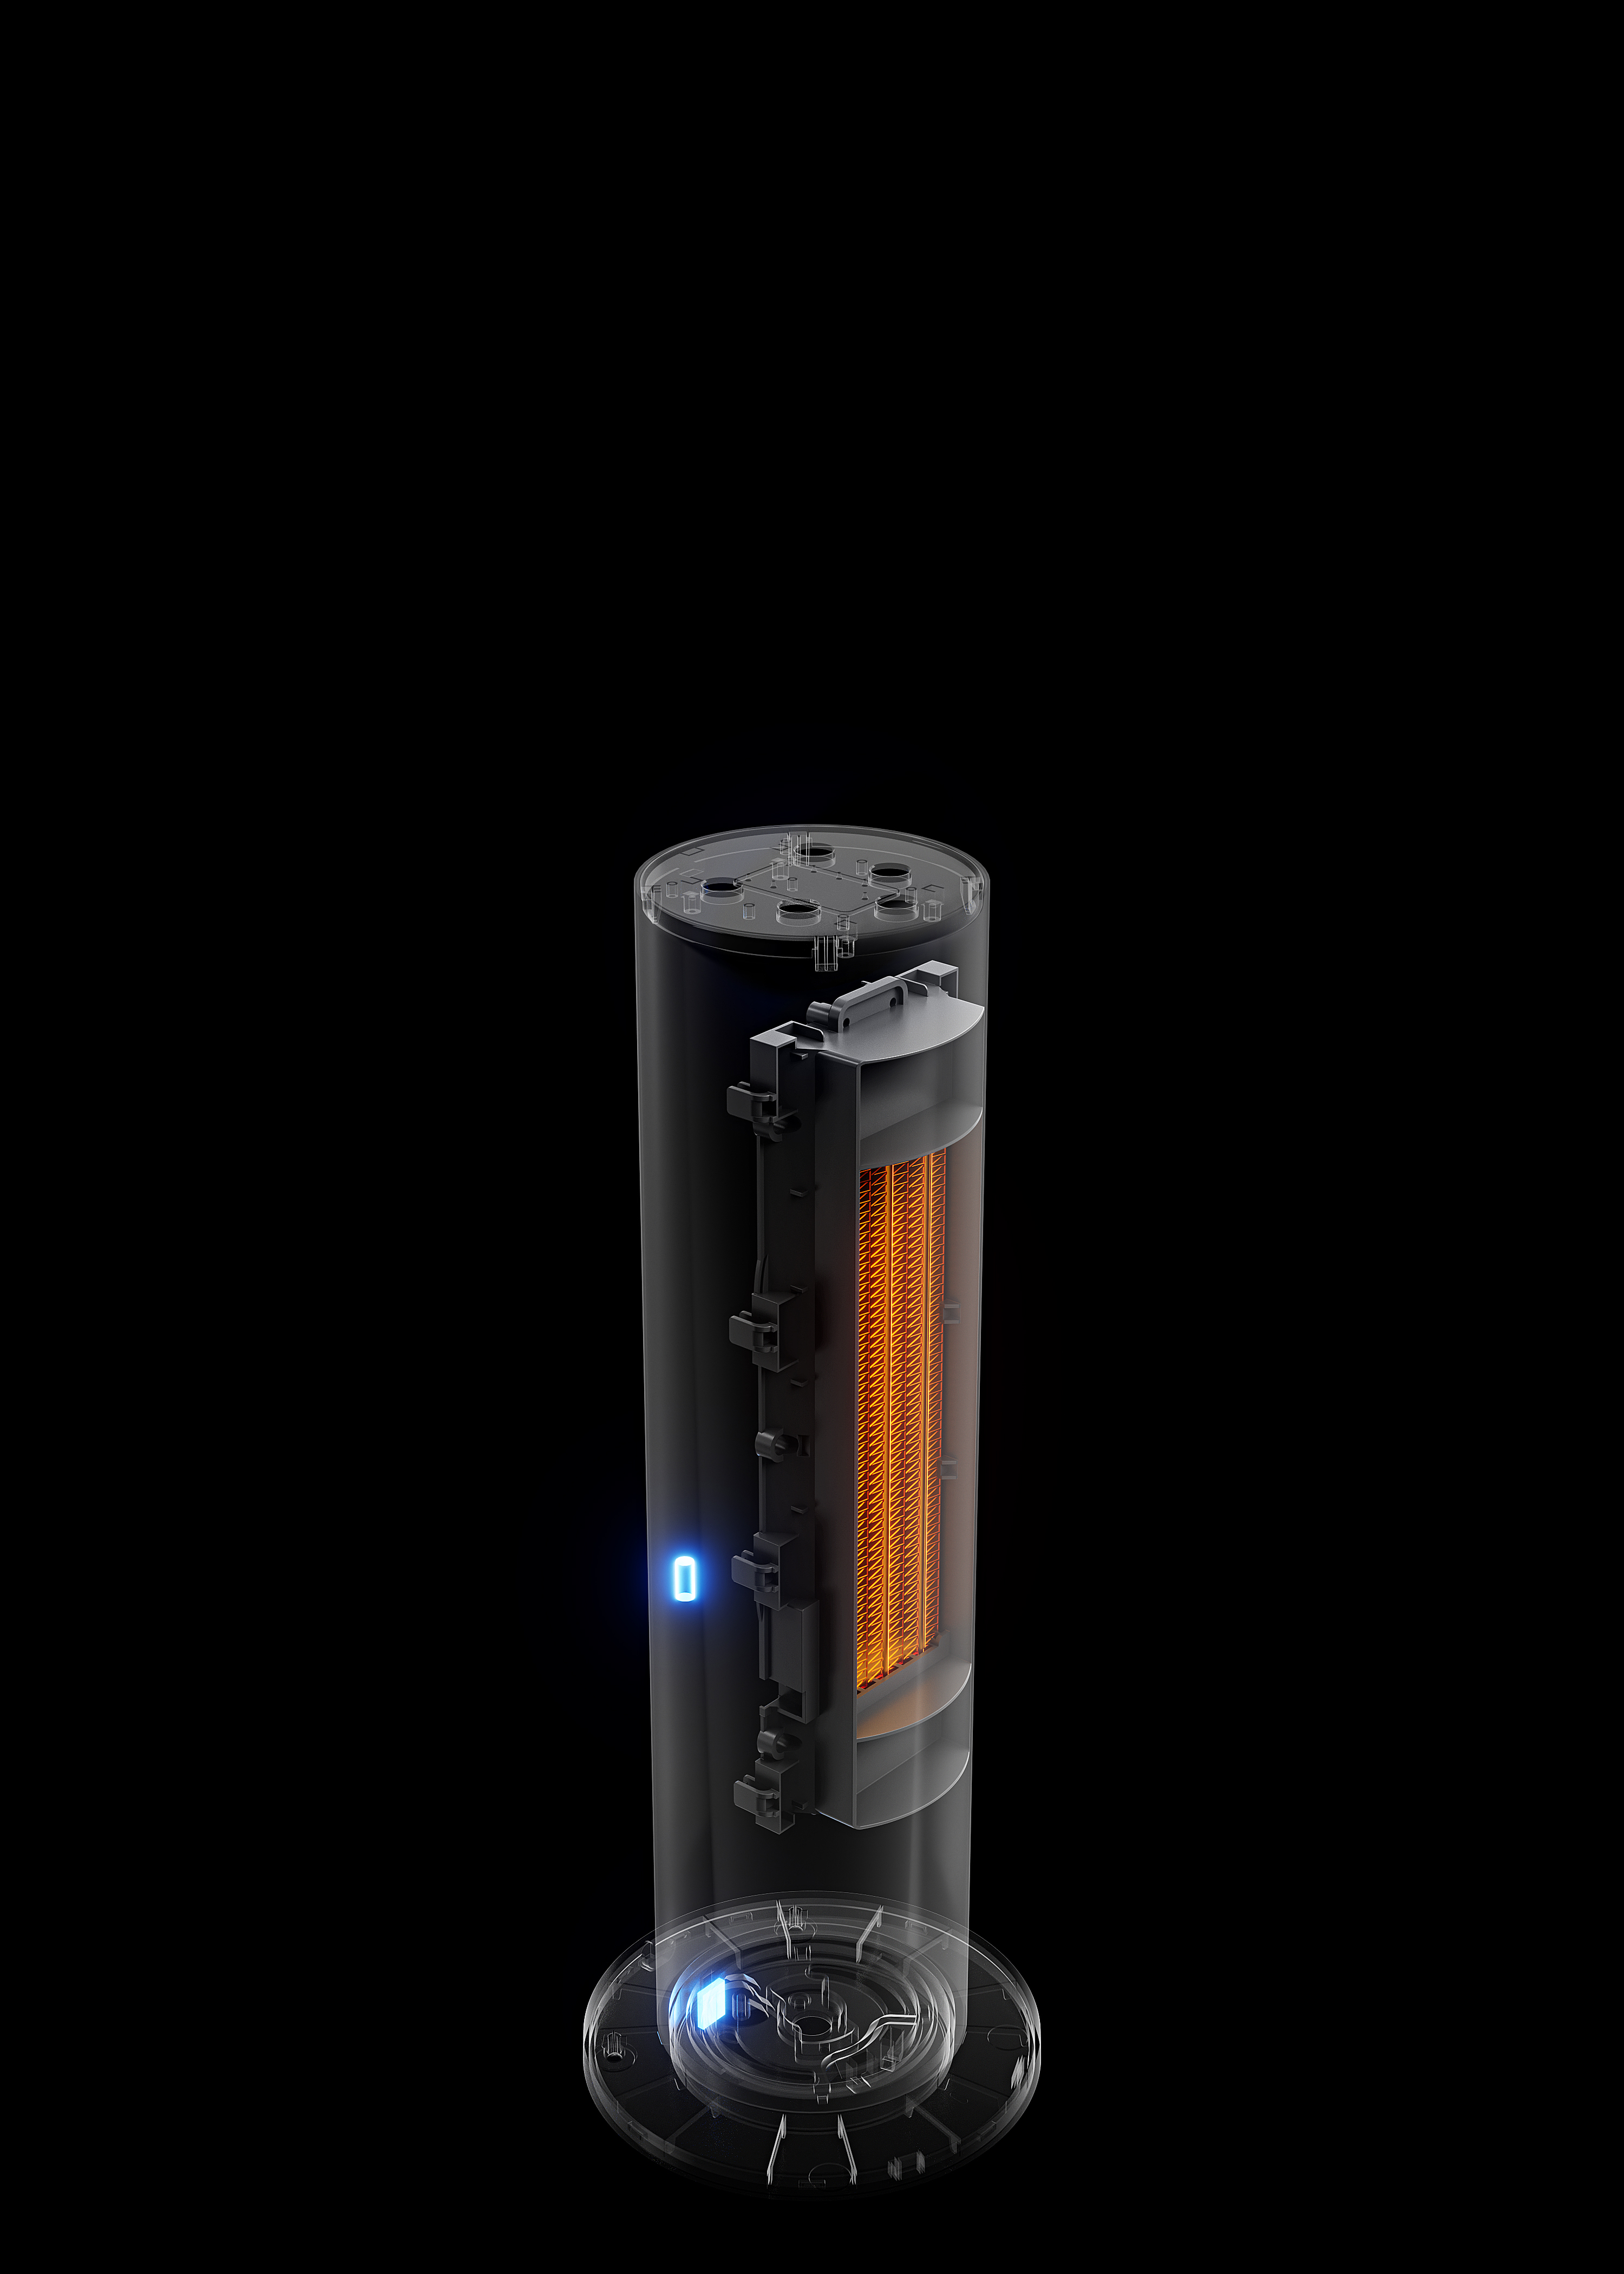 XIAOMI Xiaomi Raumgröße: BHR6101EU 15 m²) Heater (2000 Watt, Tower Smart Heizlüfter Lite Mi EU